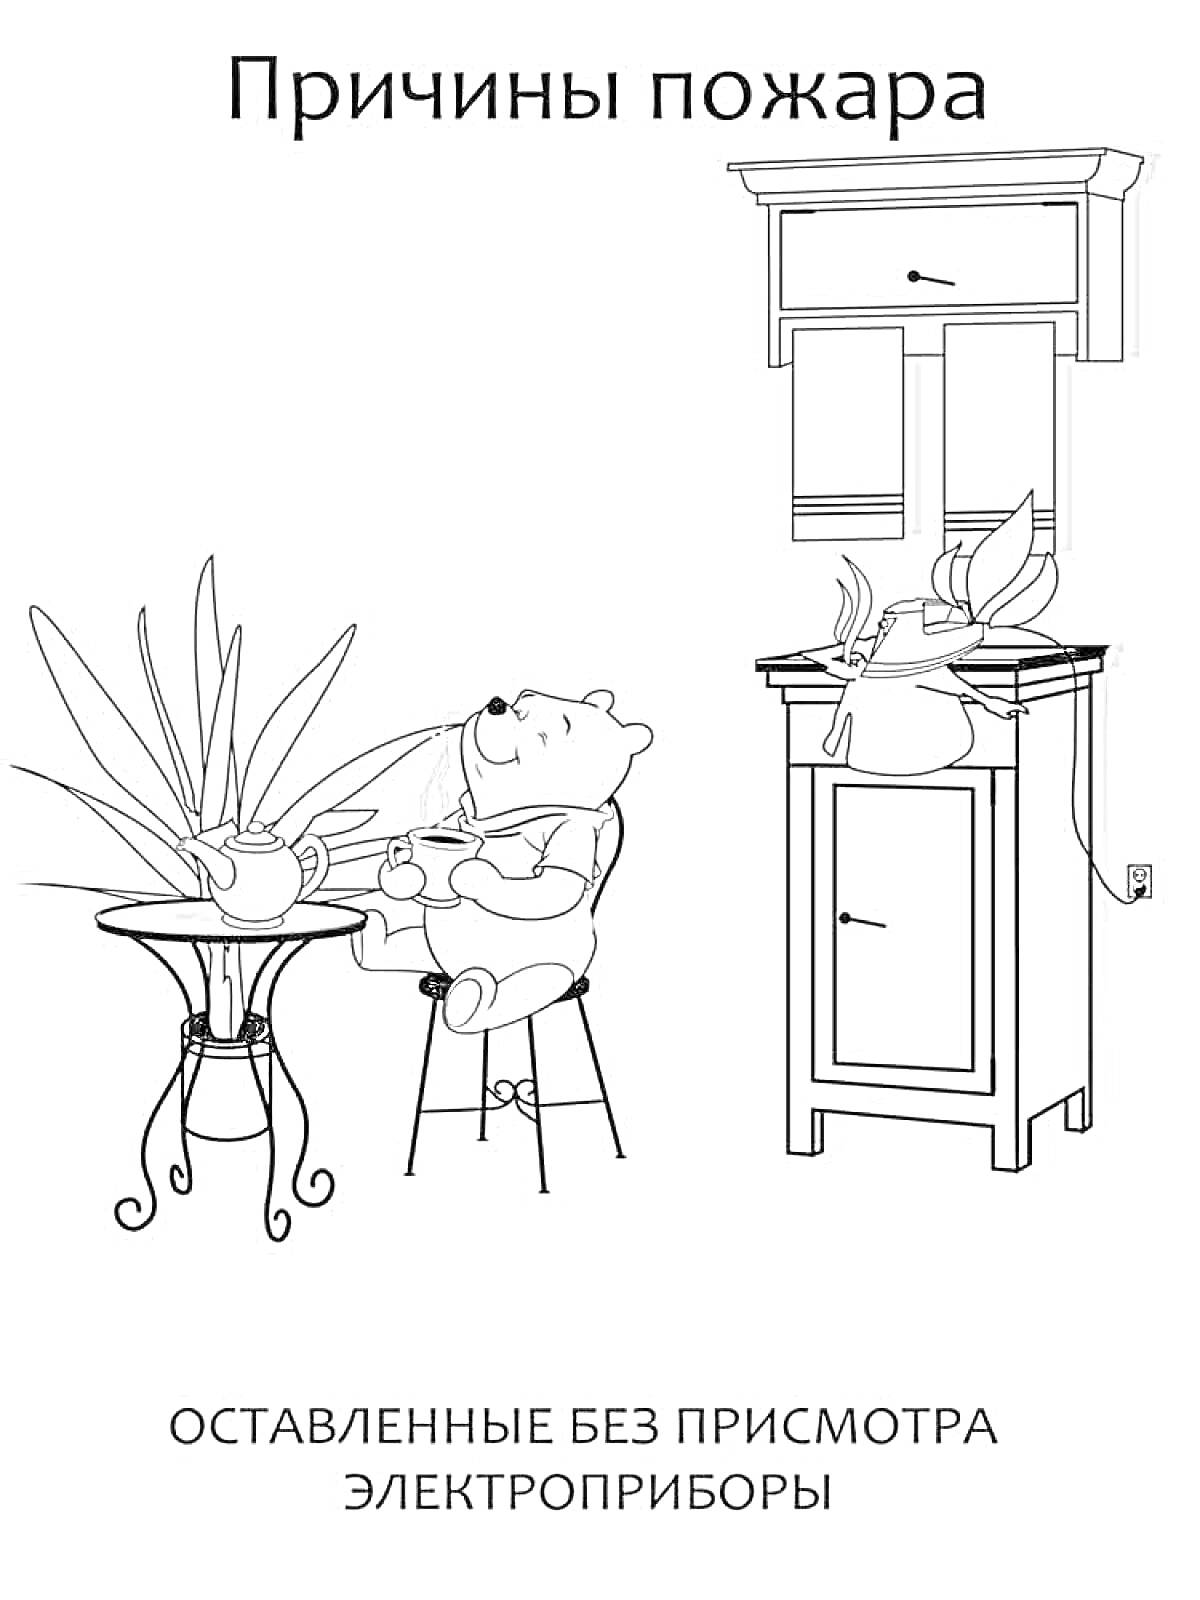 Раскраска Причины пожара. Оставленные без присмотра электроприборы: включенный электрический чайник на столе рядом с сидящим медвежонком, кухонный шкаф, горящая плита с кастрюлей, комнатное растение.